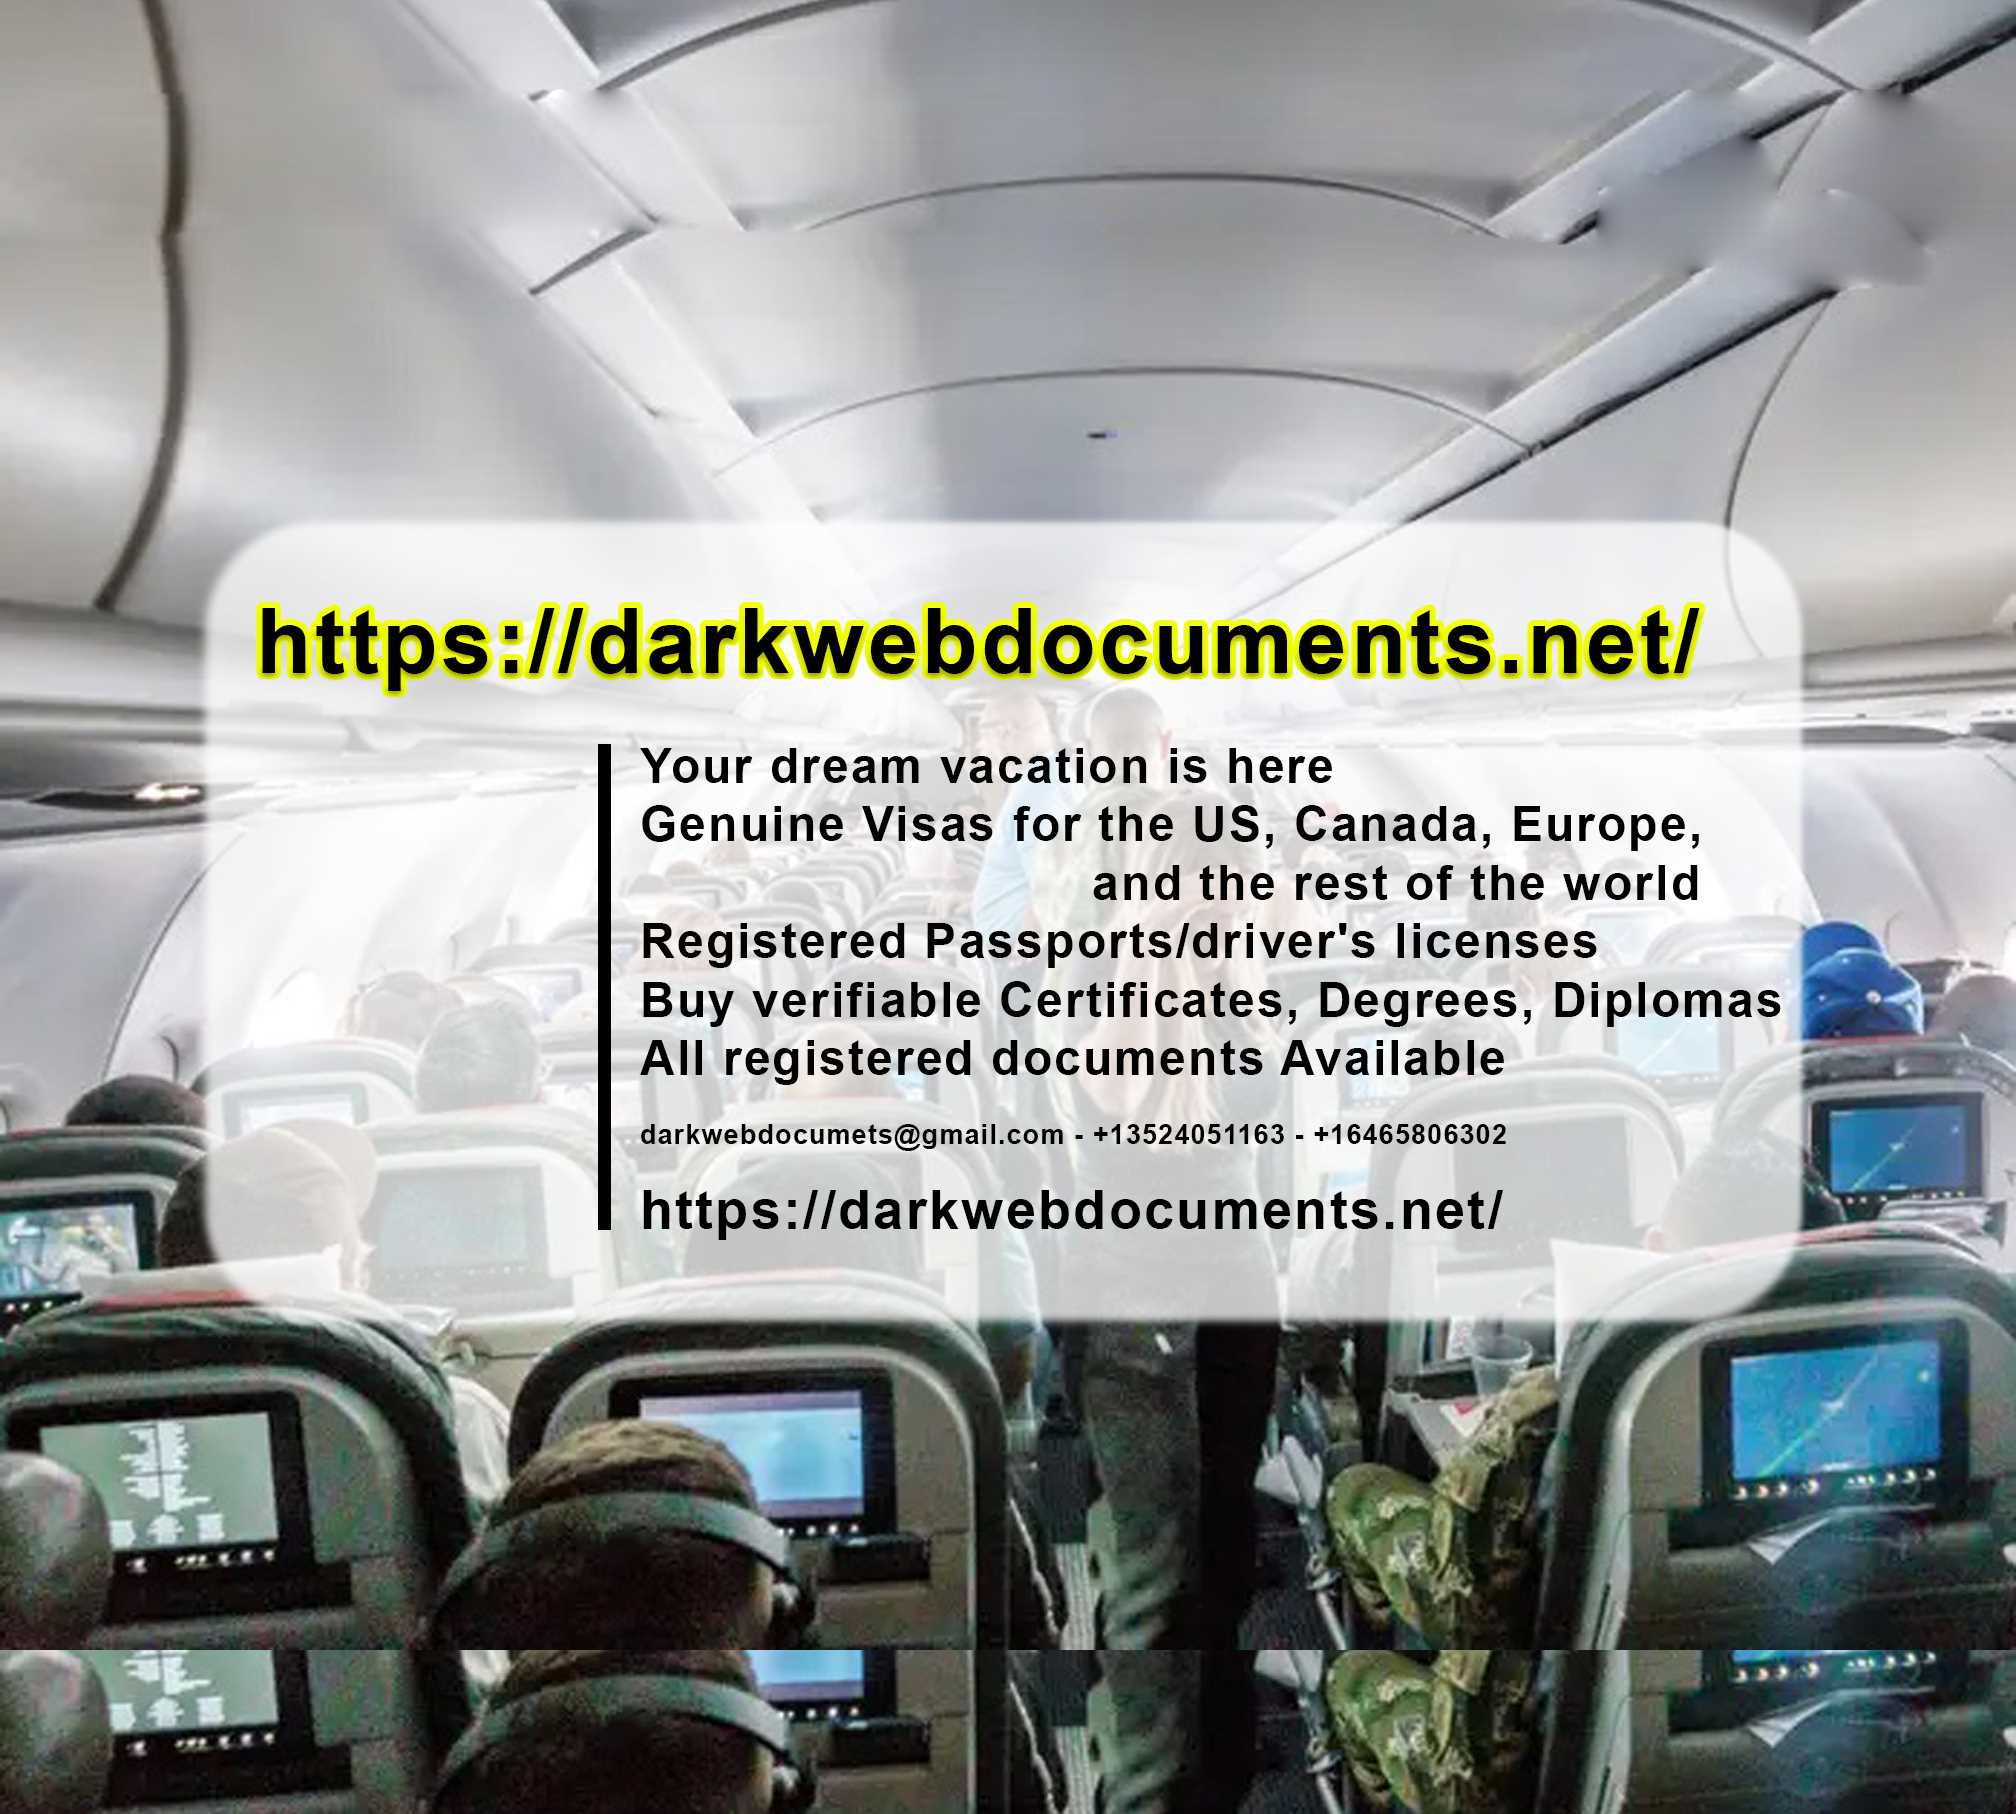 darkwebdocuments.net Գնեք կրեդիտ քարտերի կլոններ, IELTS, ցանկացած աստիճան, վկայականներ: Whatsapp՝ +16465806302: Գնեք 100% չբացահայտված կեղծ եվրո: պեսո, դոլար, ֆունտ.